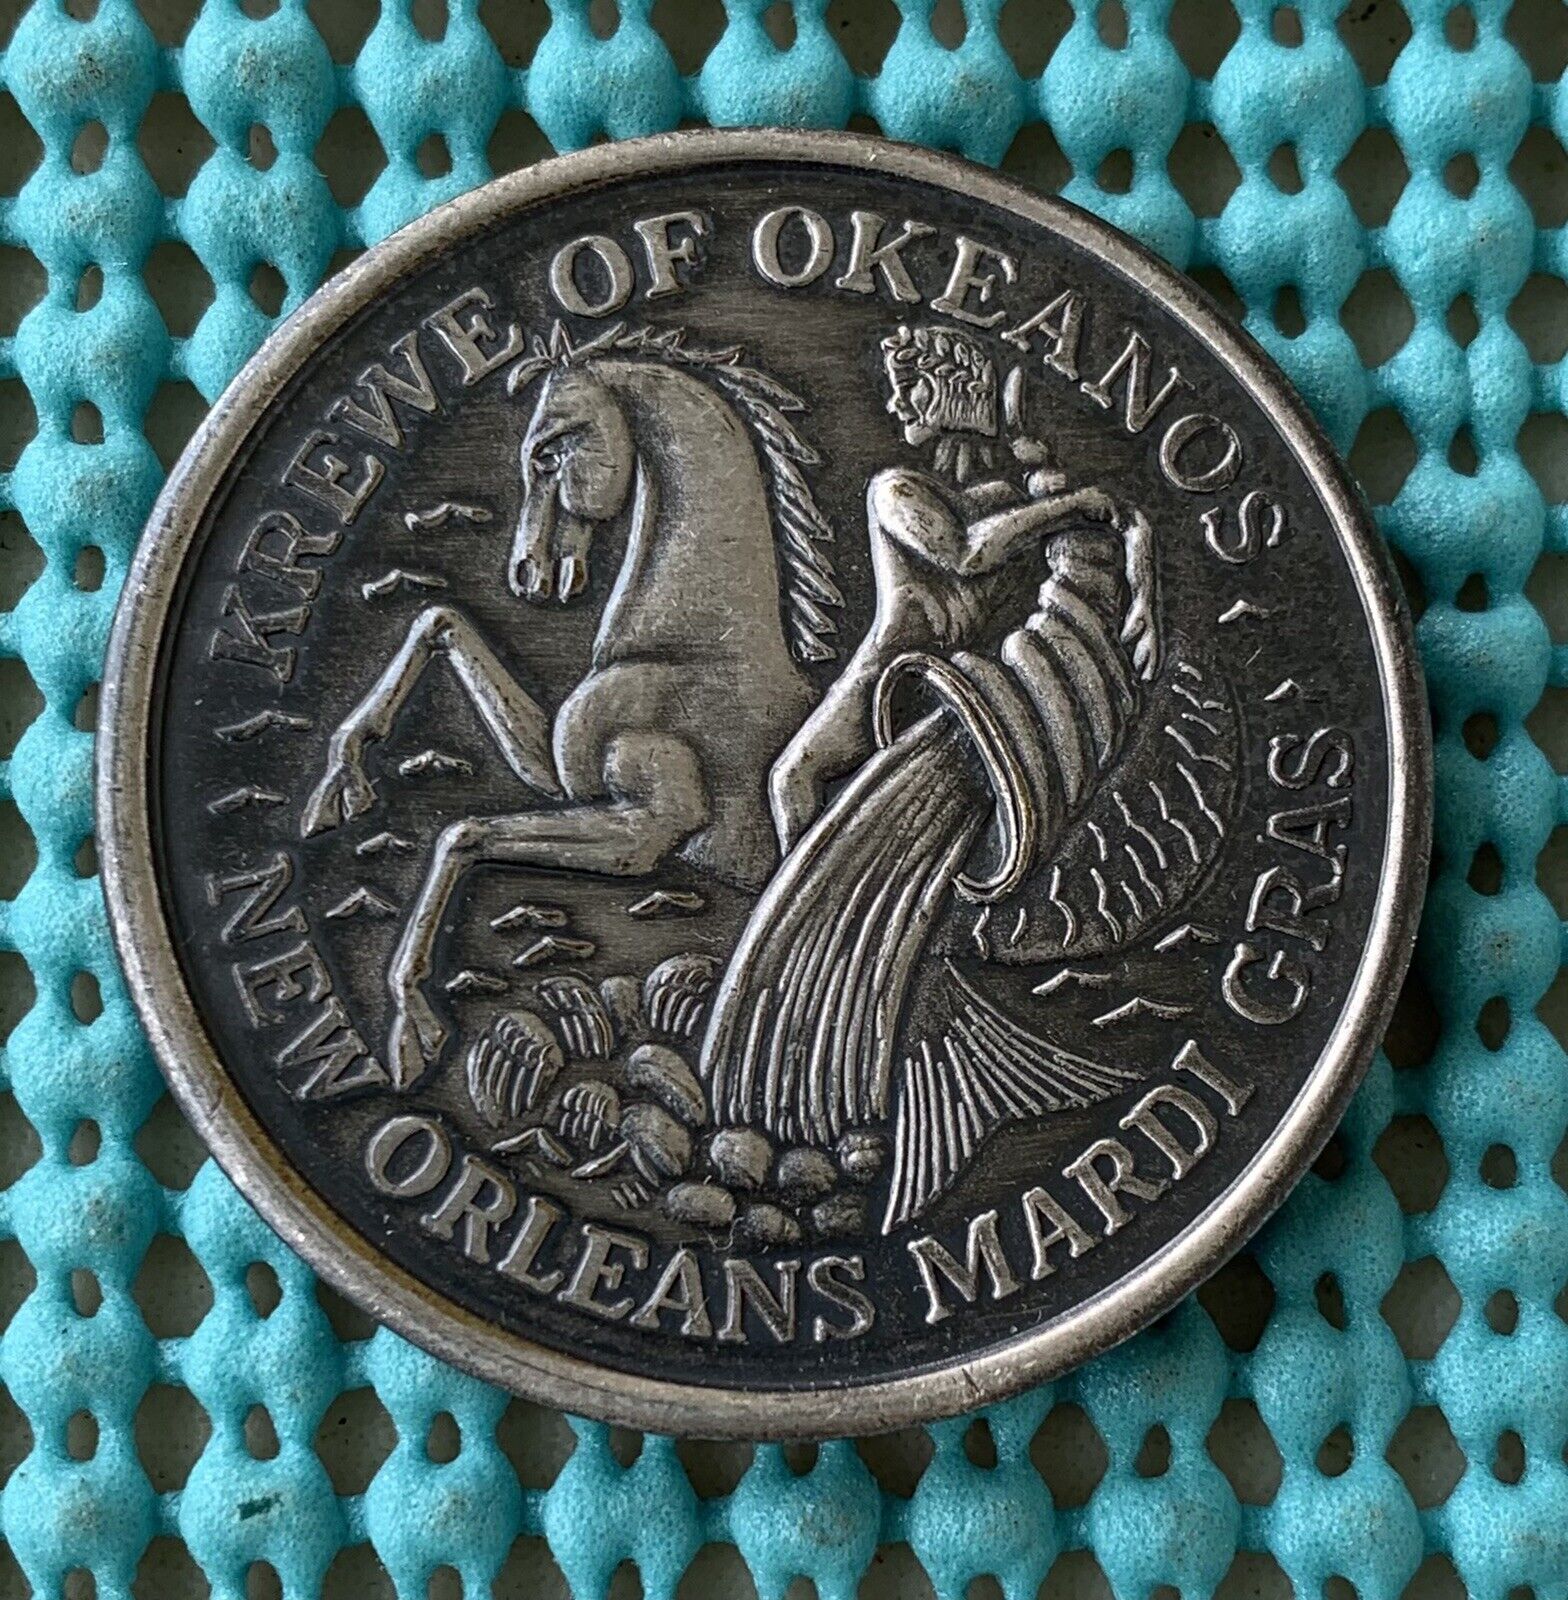 1967 Krewe of OKEANOS  oxidized silver Mardi Gras doubloon